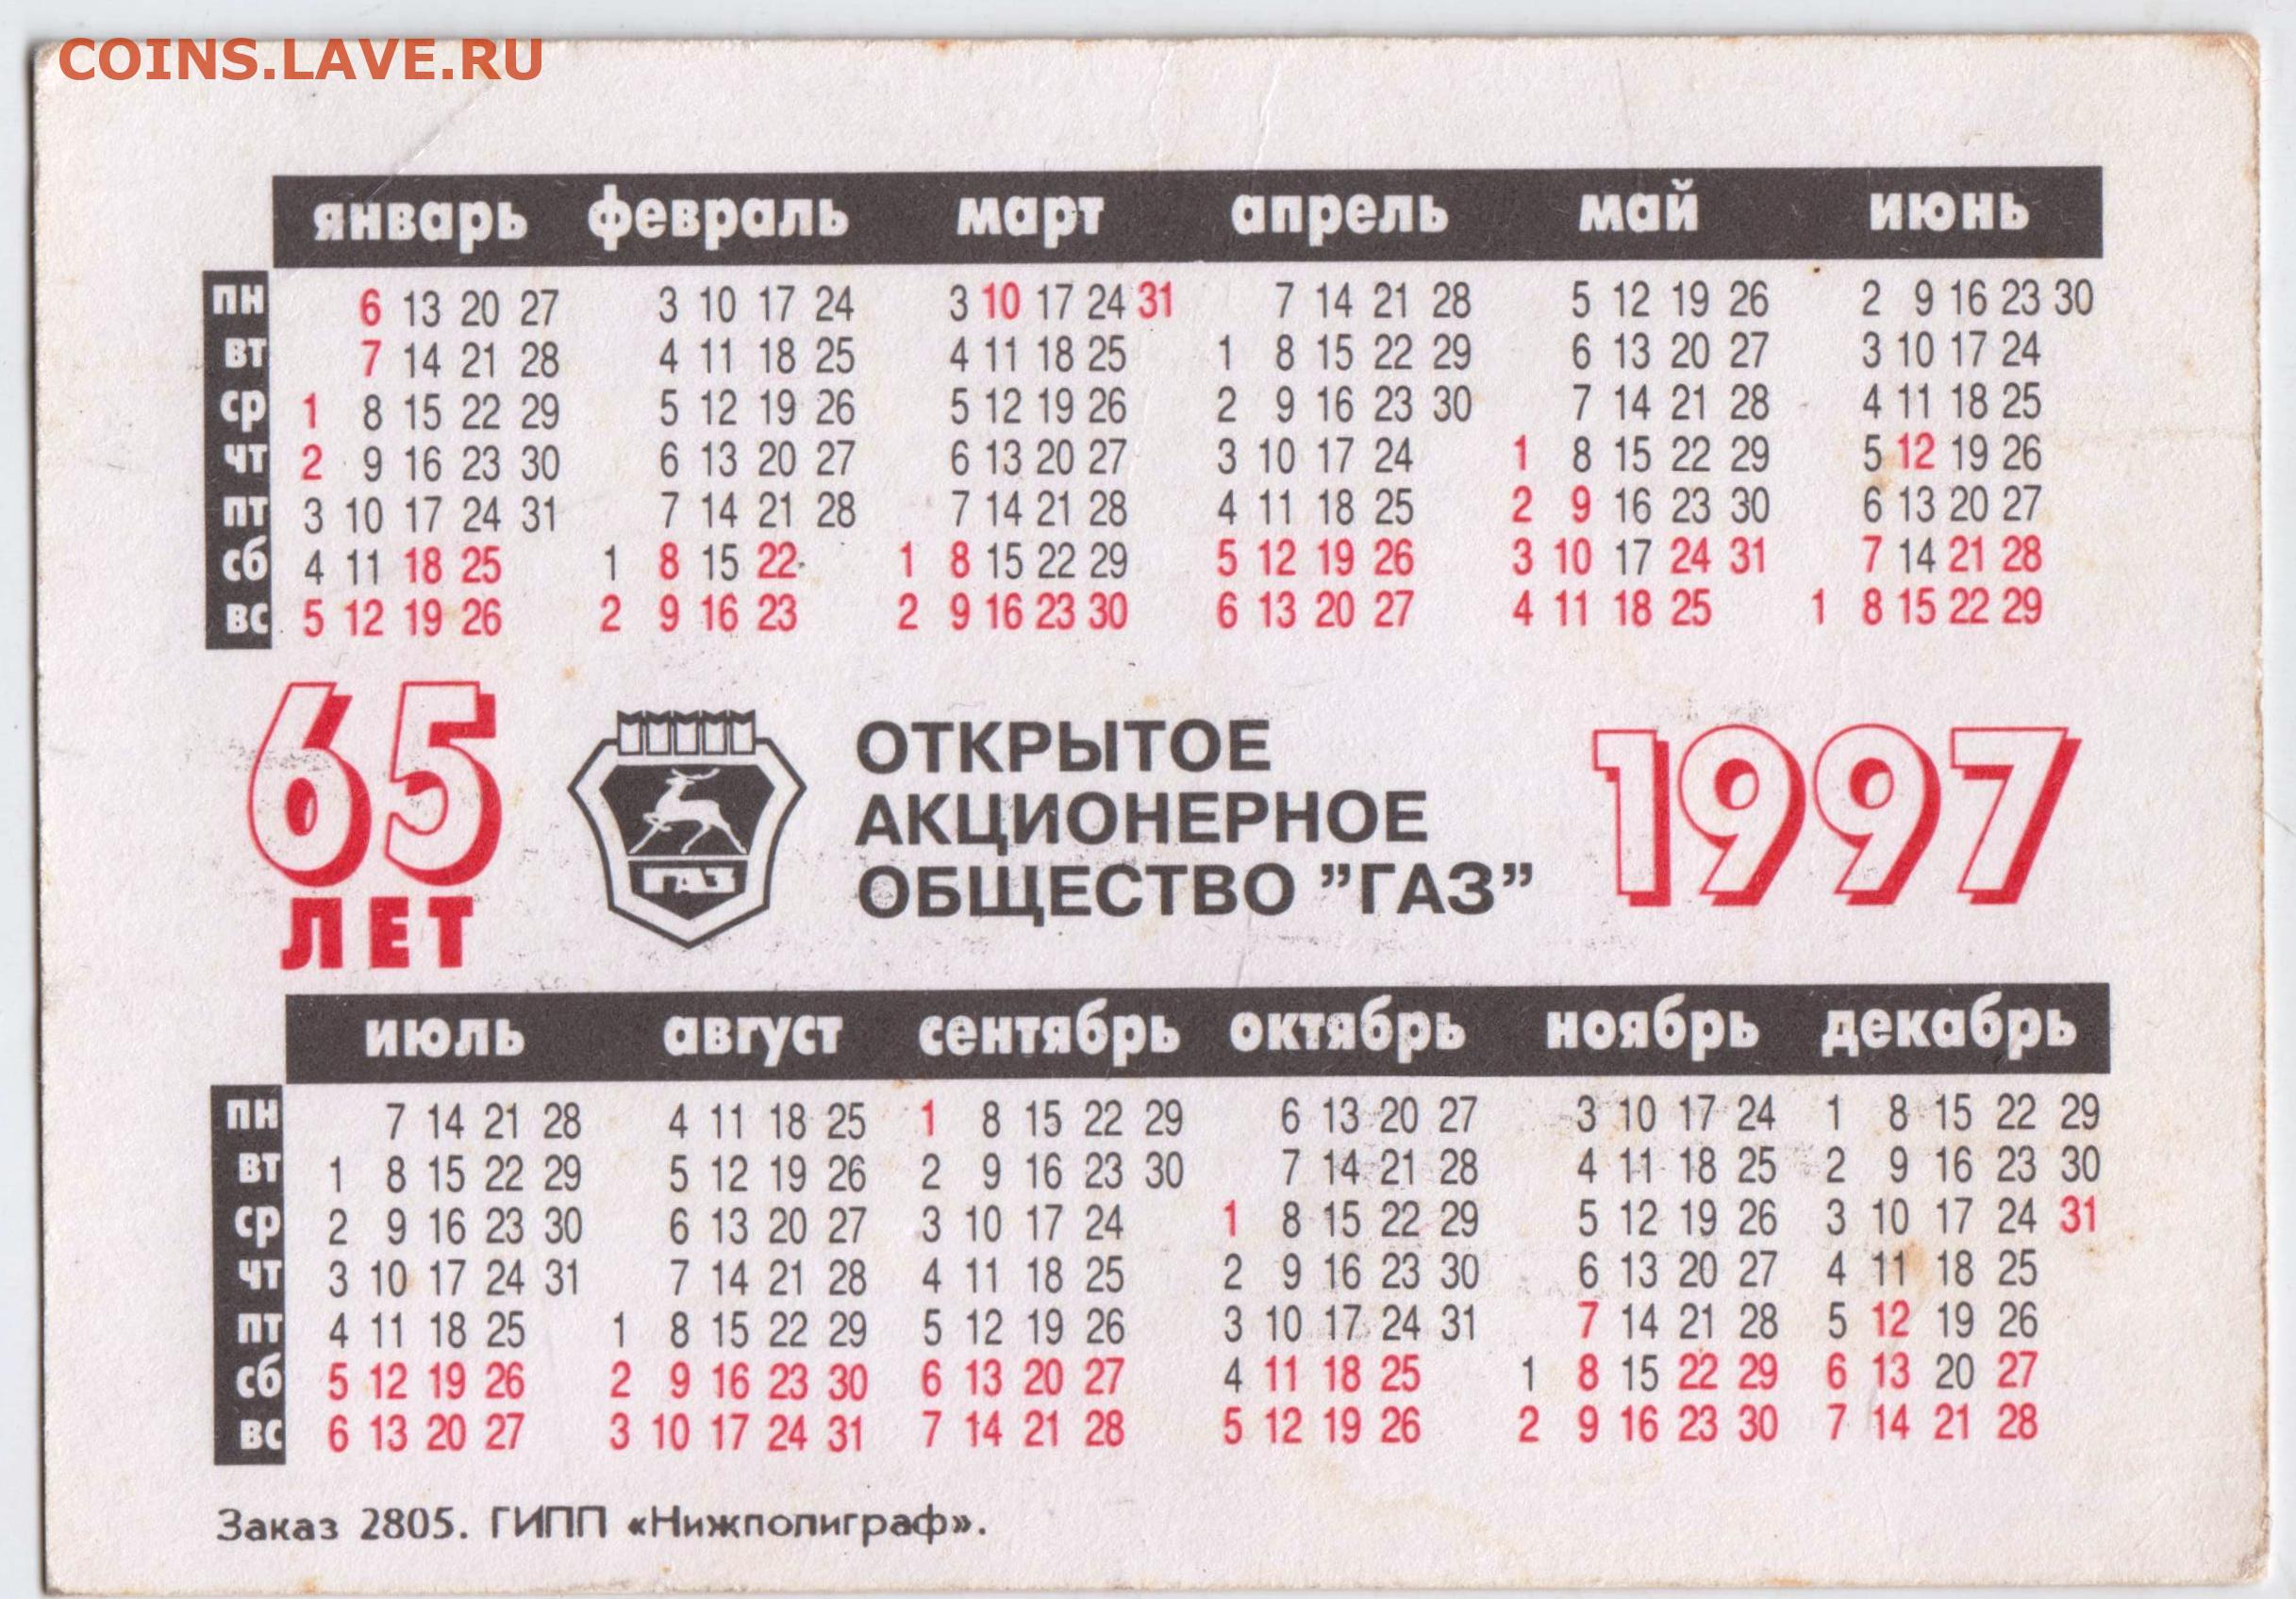 1 июля 1997. Календарь 1997. Календарь 1997 года по месяцам. Календарь 1999. Июнь 1997 года календарь.